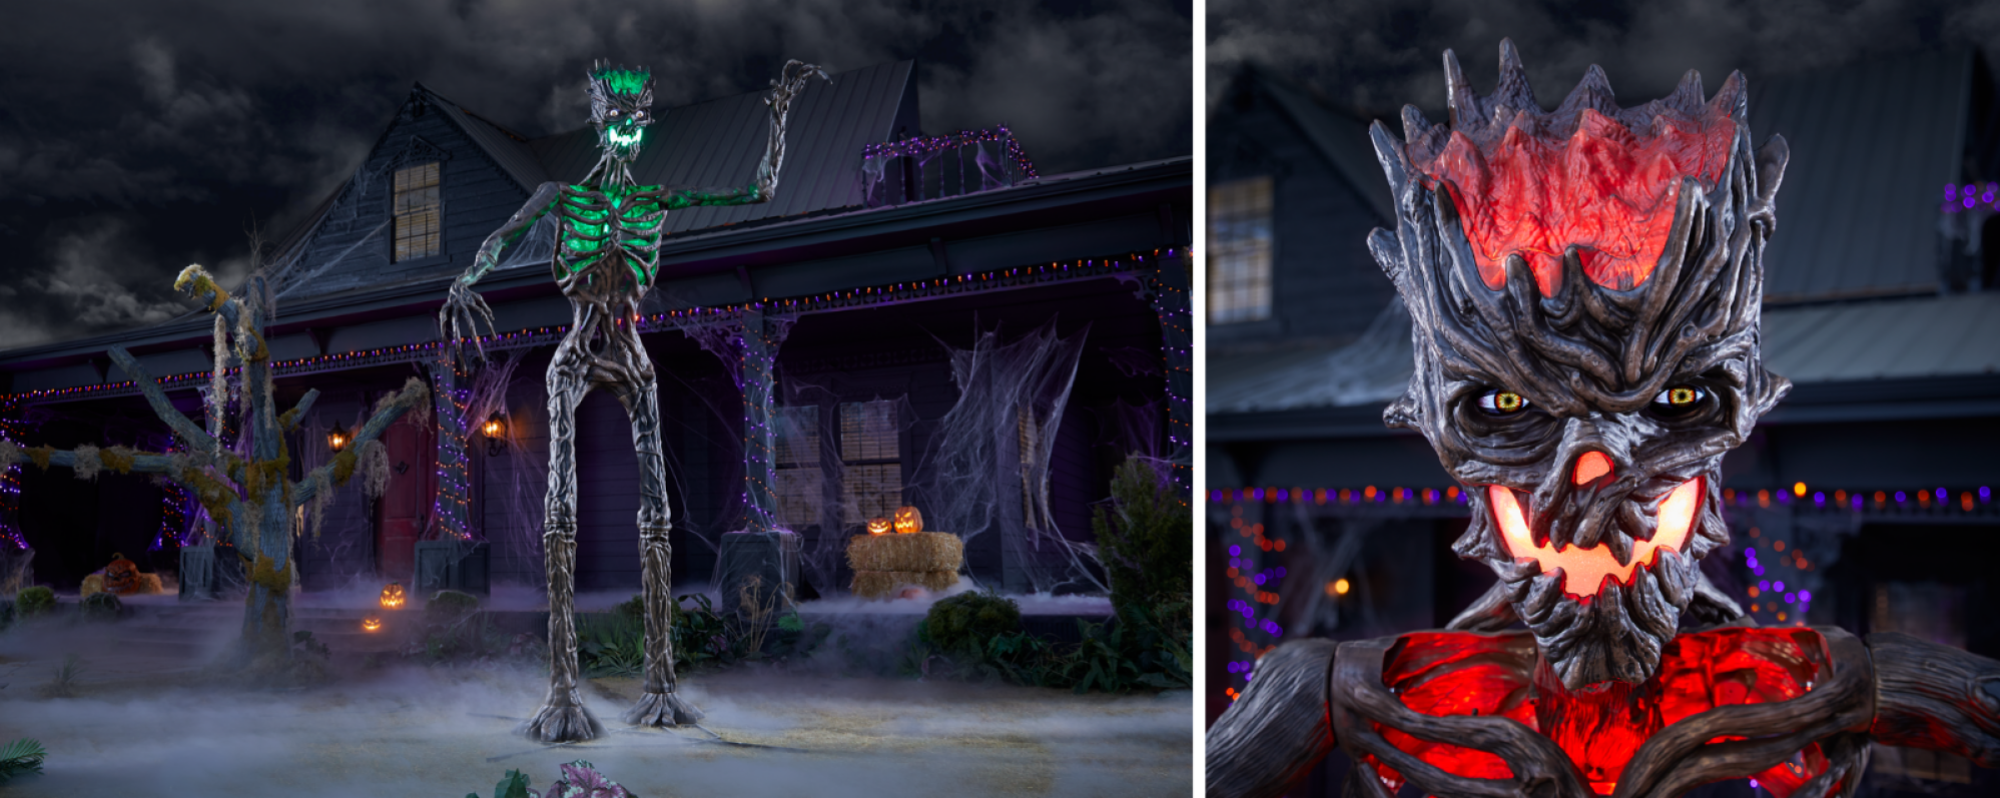 une vue complète du 12,5 pieds.  Squelette Inferno Deadwood de taille géante devant une maison hantée à côté d'un gros plan de sa tête